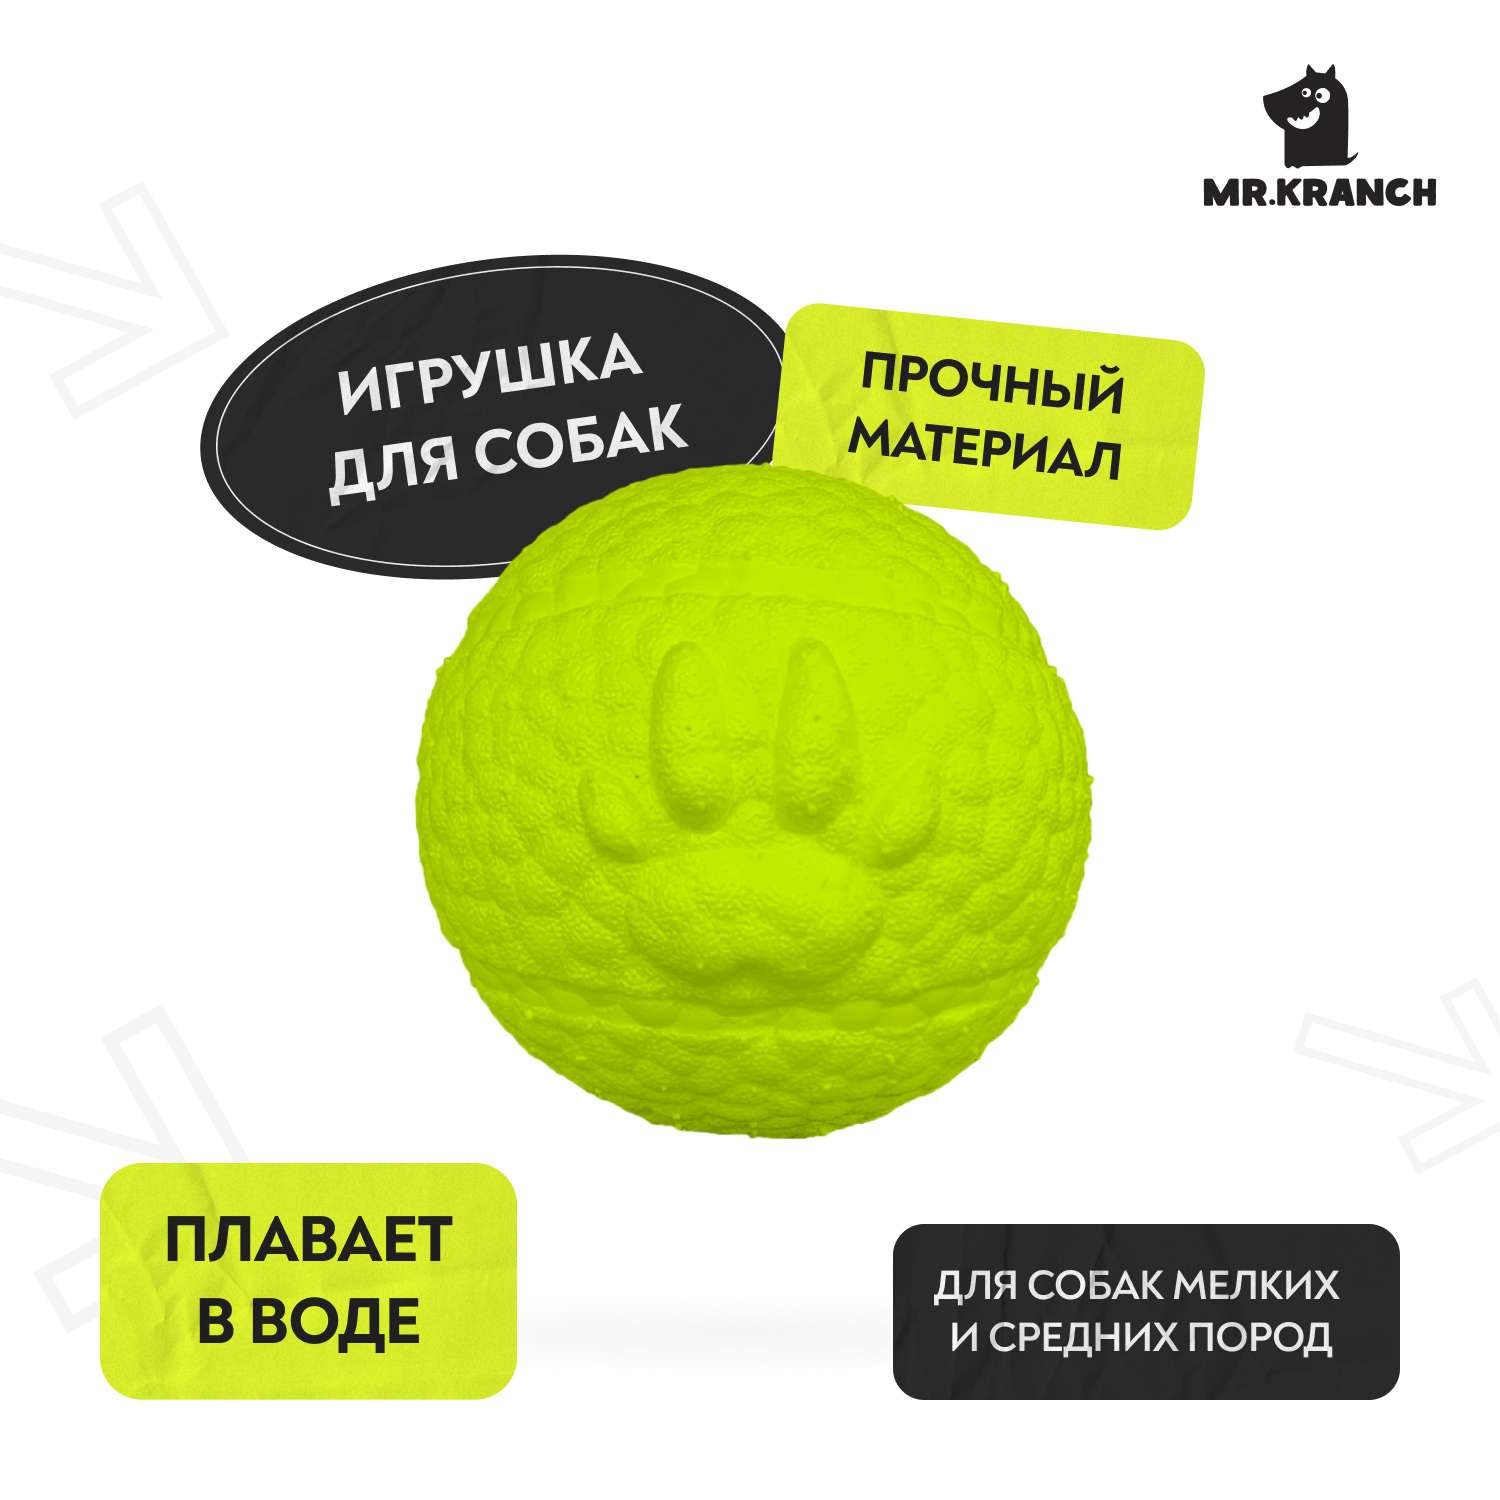 Игрушка для собак Mr.Kranch Мяч с лапкой 8см неоновая Желтая - фото 1